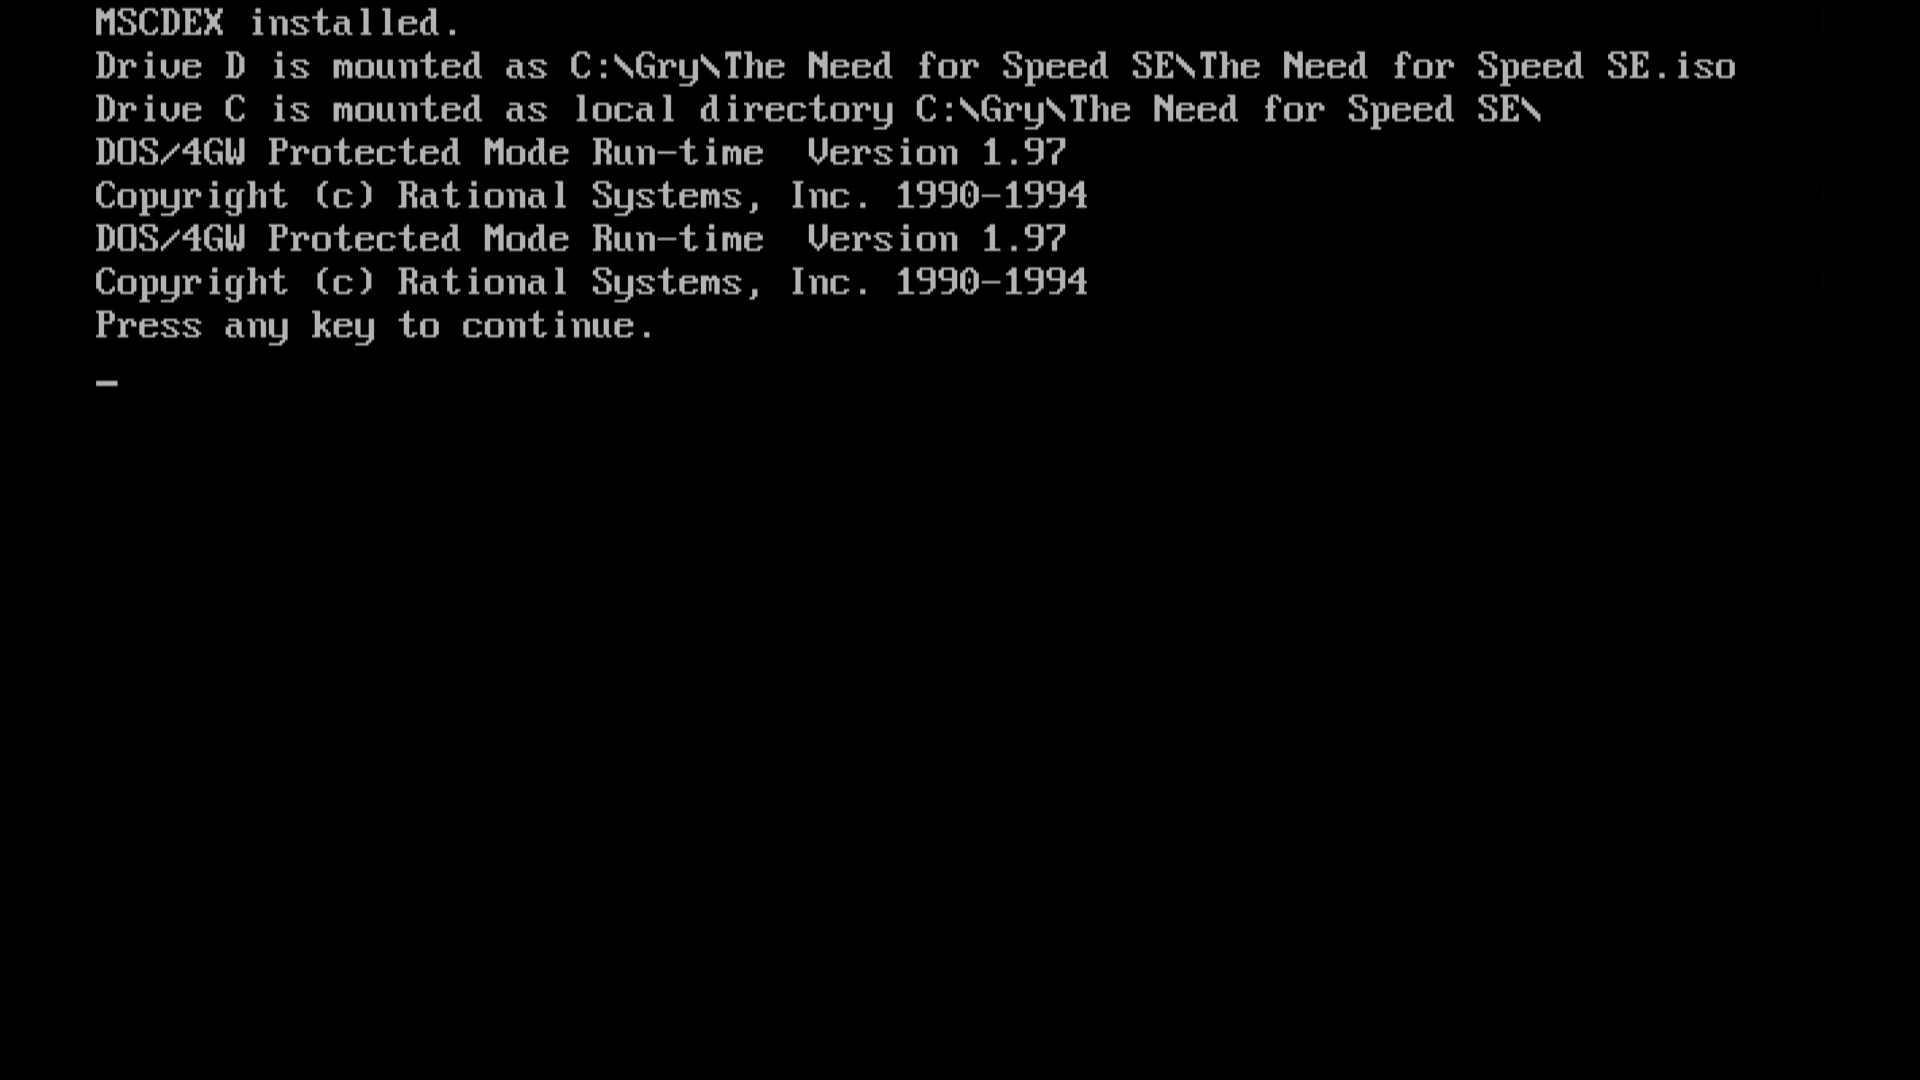 NFS - The Need for Speed - instalacja i uruchamianie DOSBox Launchbox Windows 11